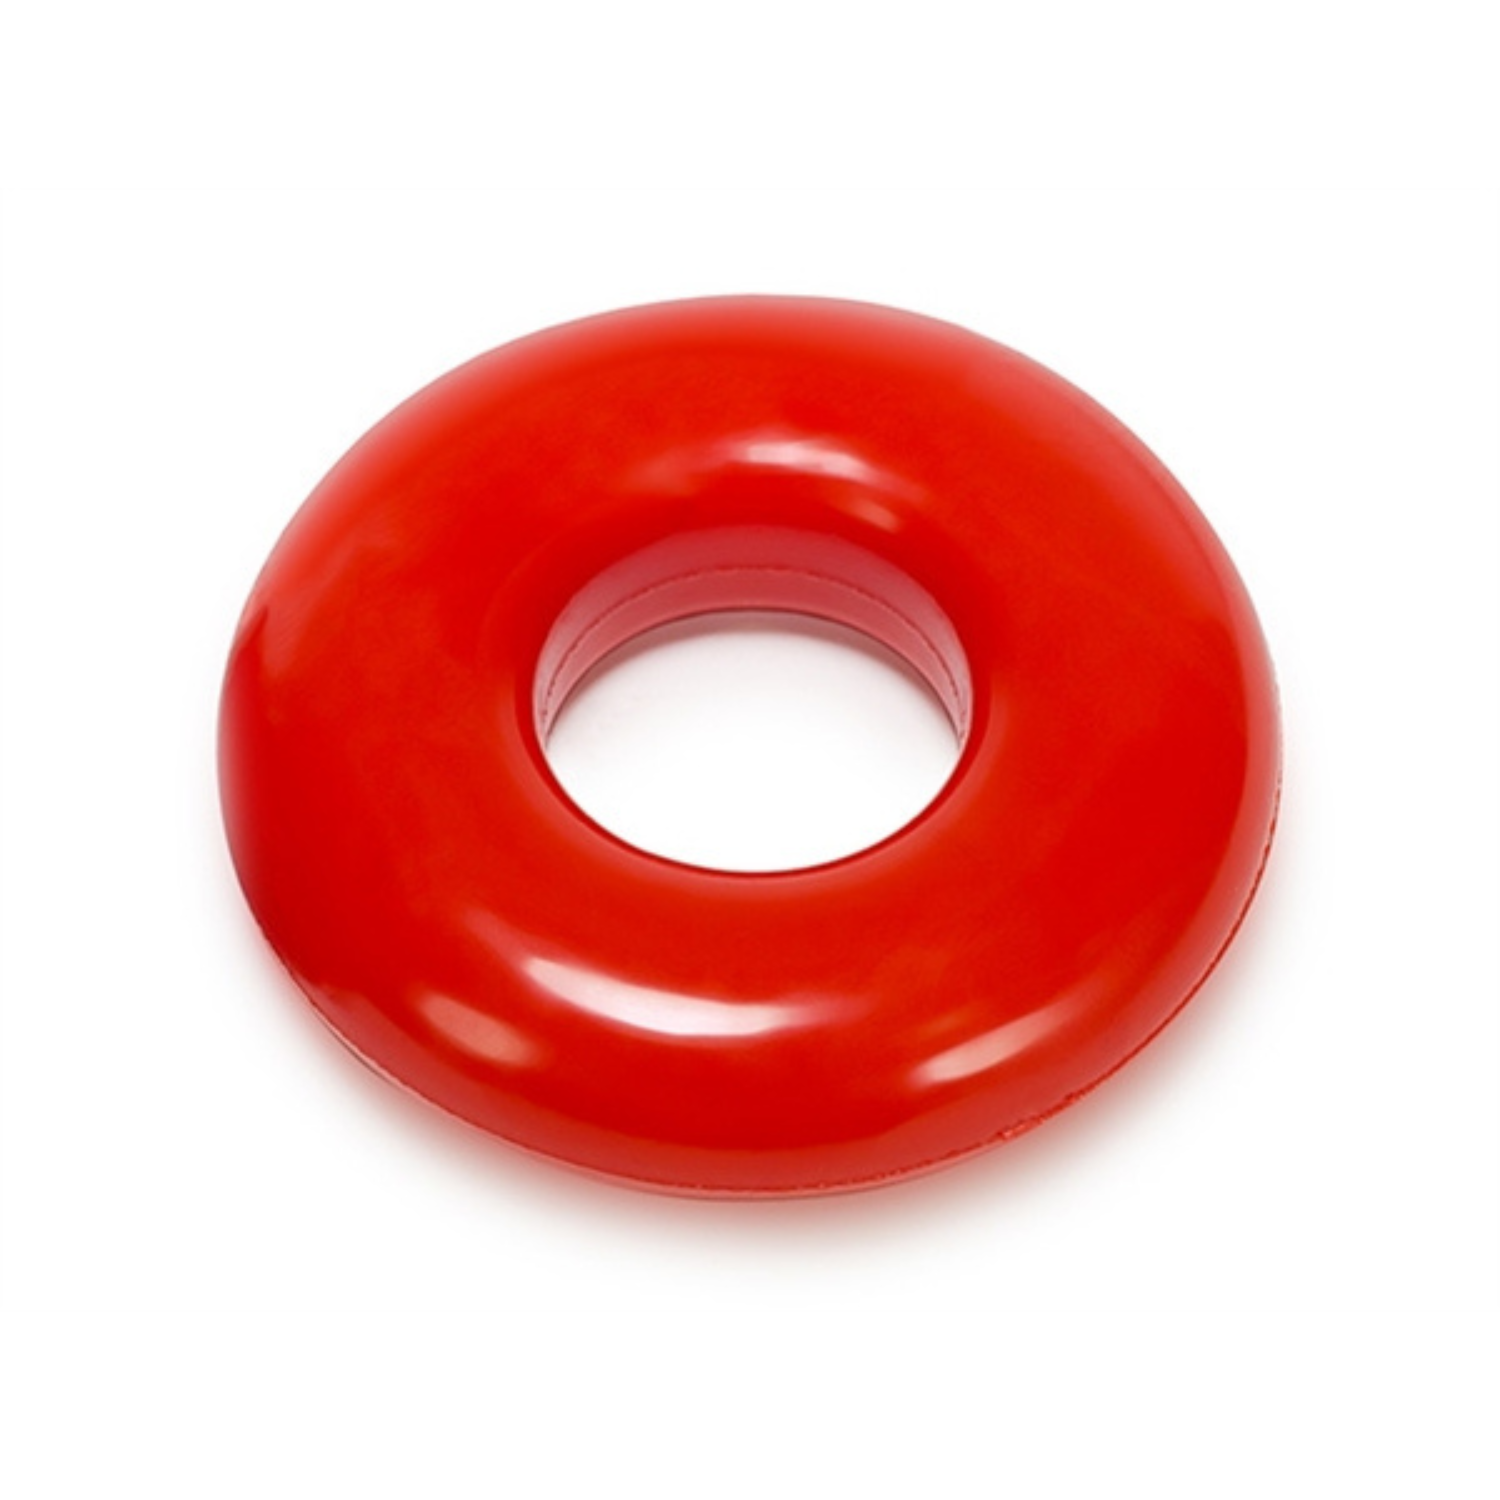 Rode donut cockring ontworpen door Oxballs voor gay mannen en te koop bij Flavourez.